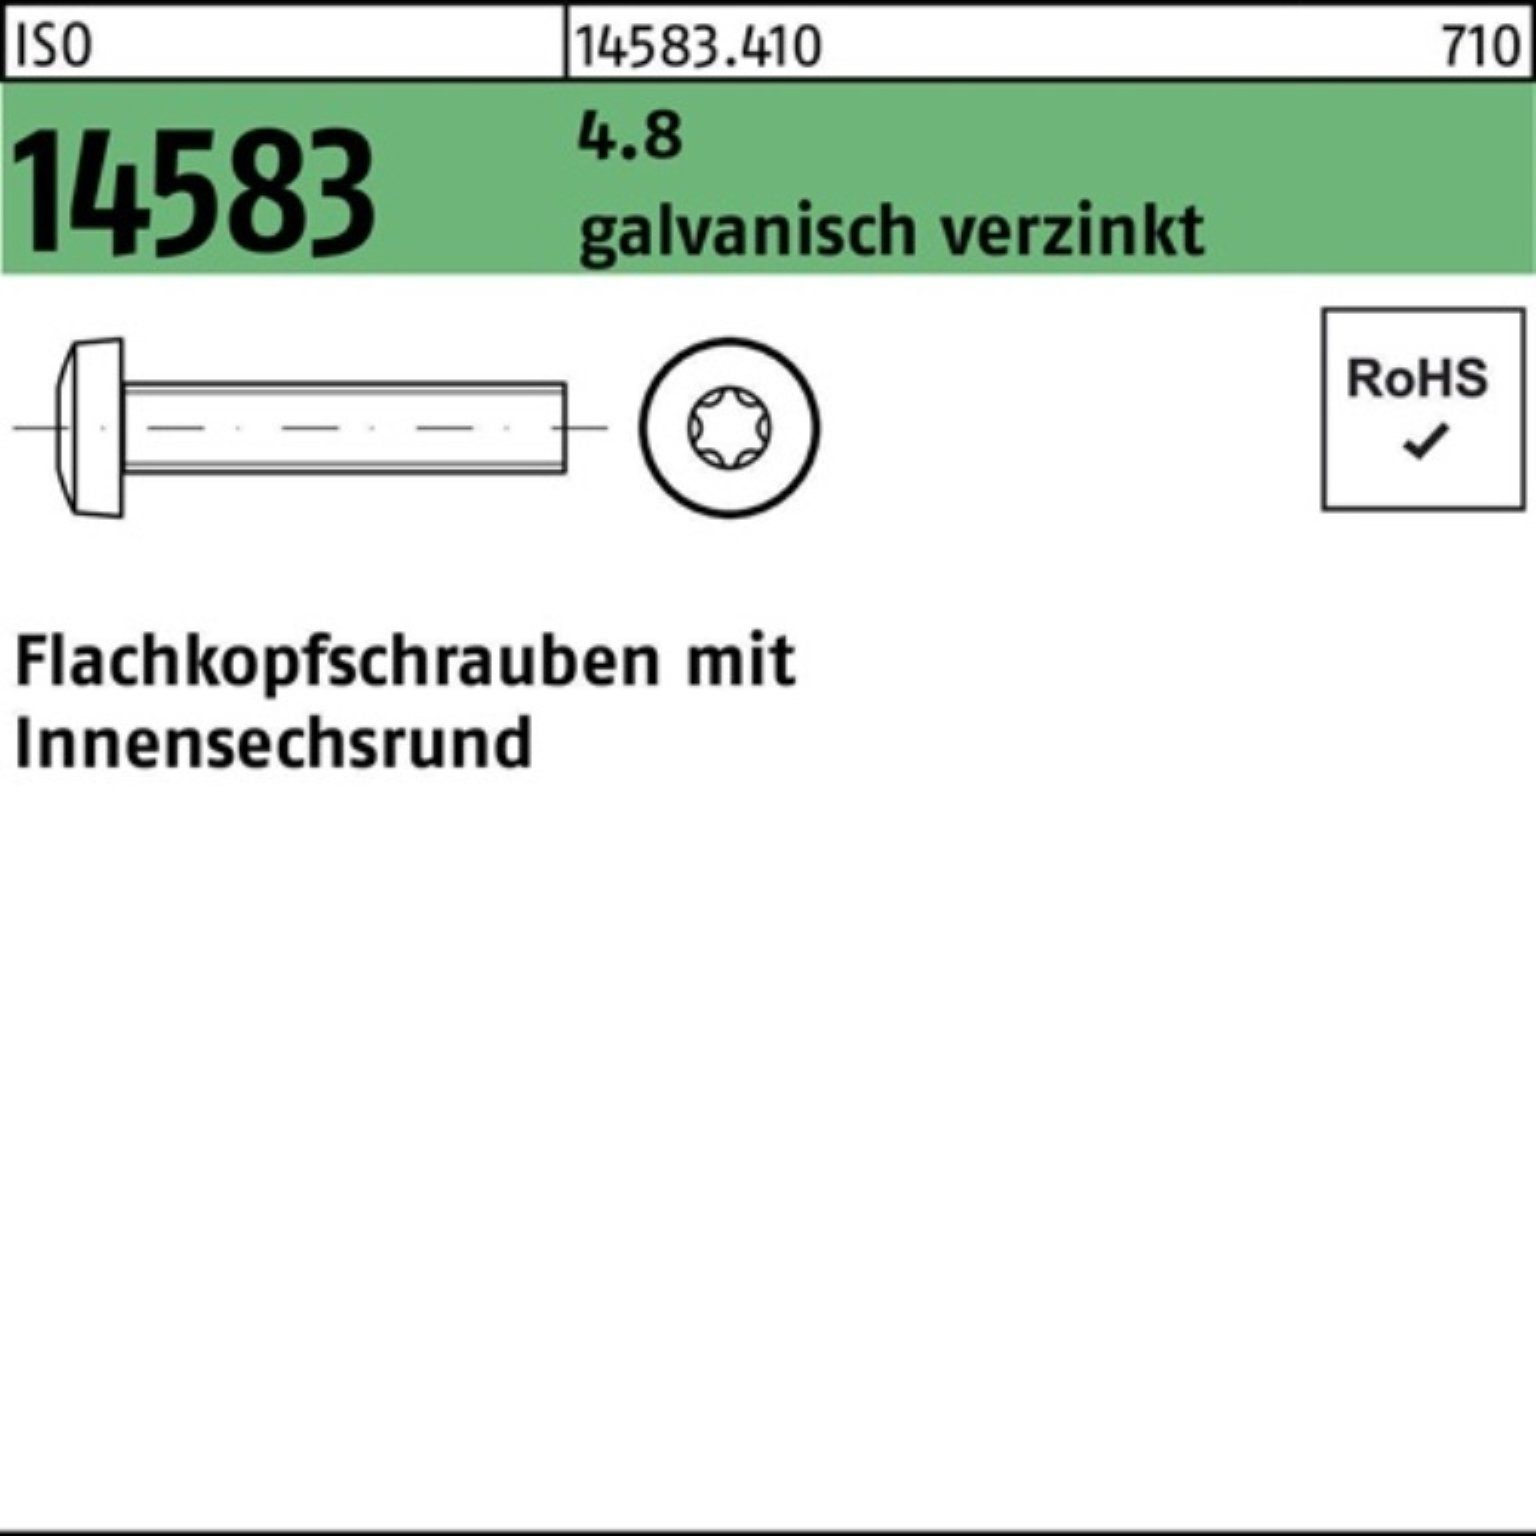 galv.verz. ISO 200St. Pack 4.8 Reyher Flachkopfschraube M6x10 Schraube ISR 14583 200er